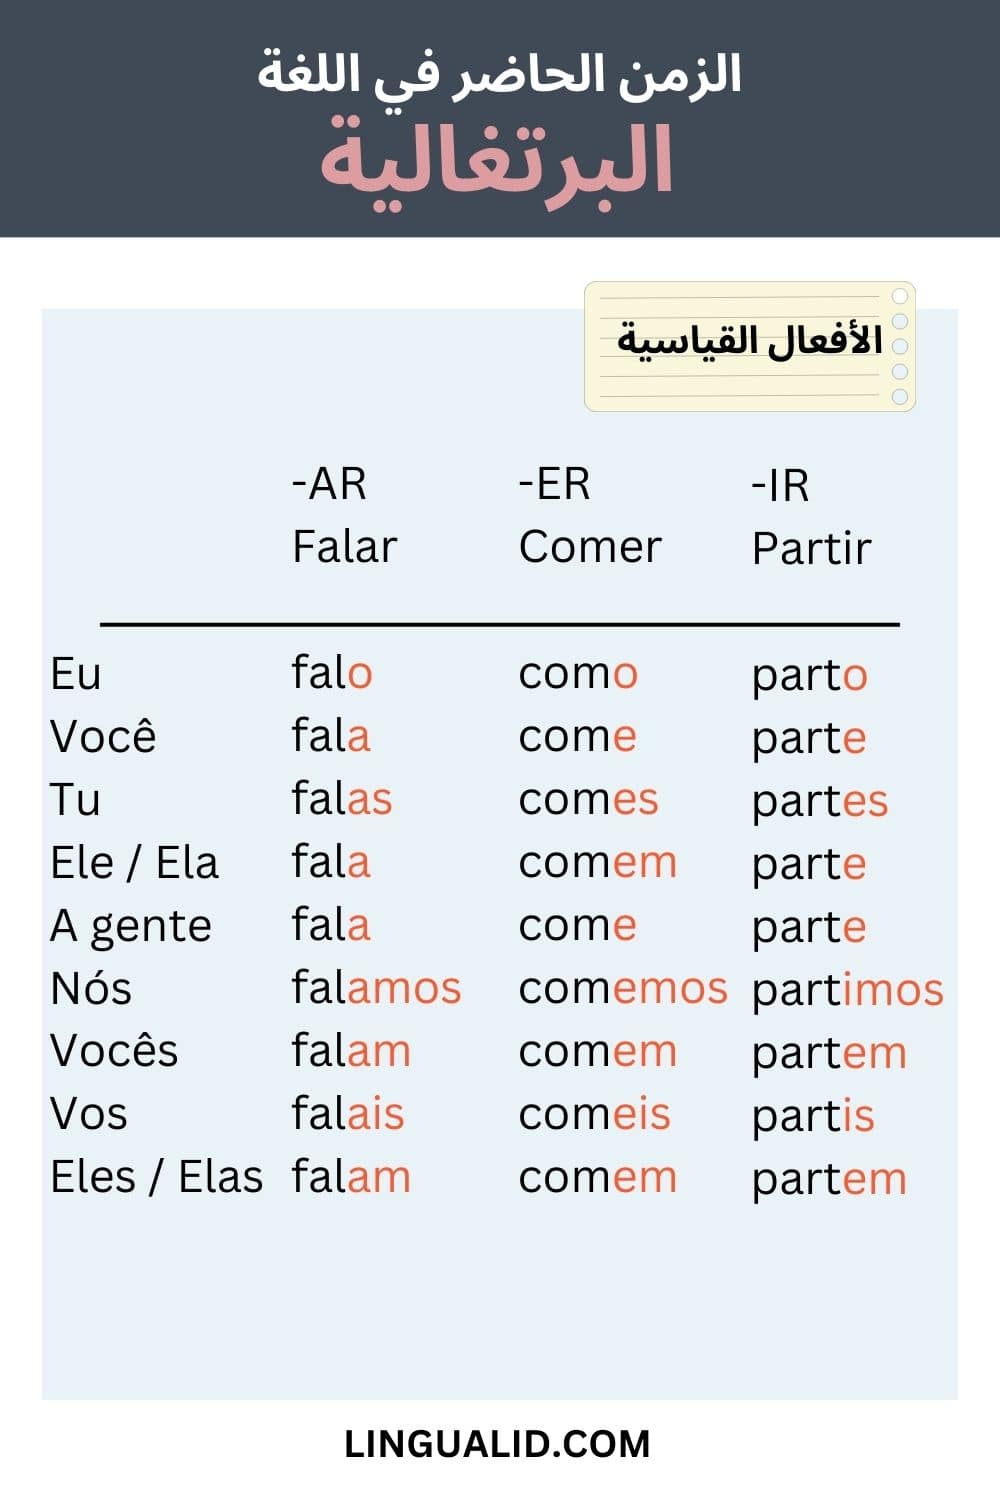 الزمن الحاضر في اللغة البرتغالية المضارع البسيط